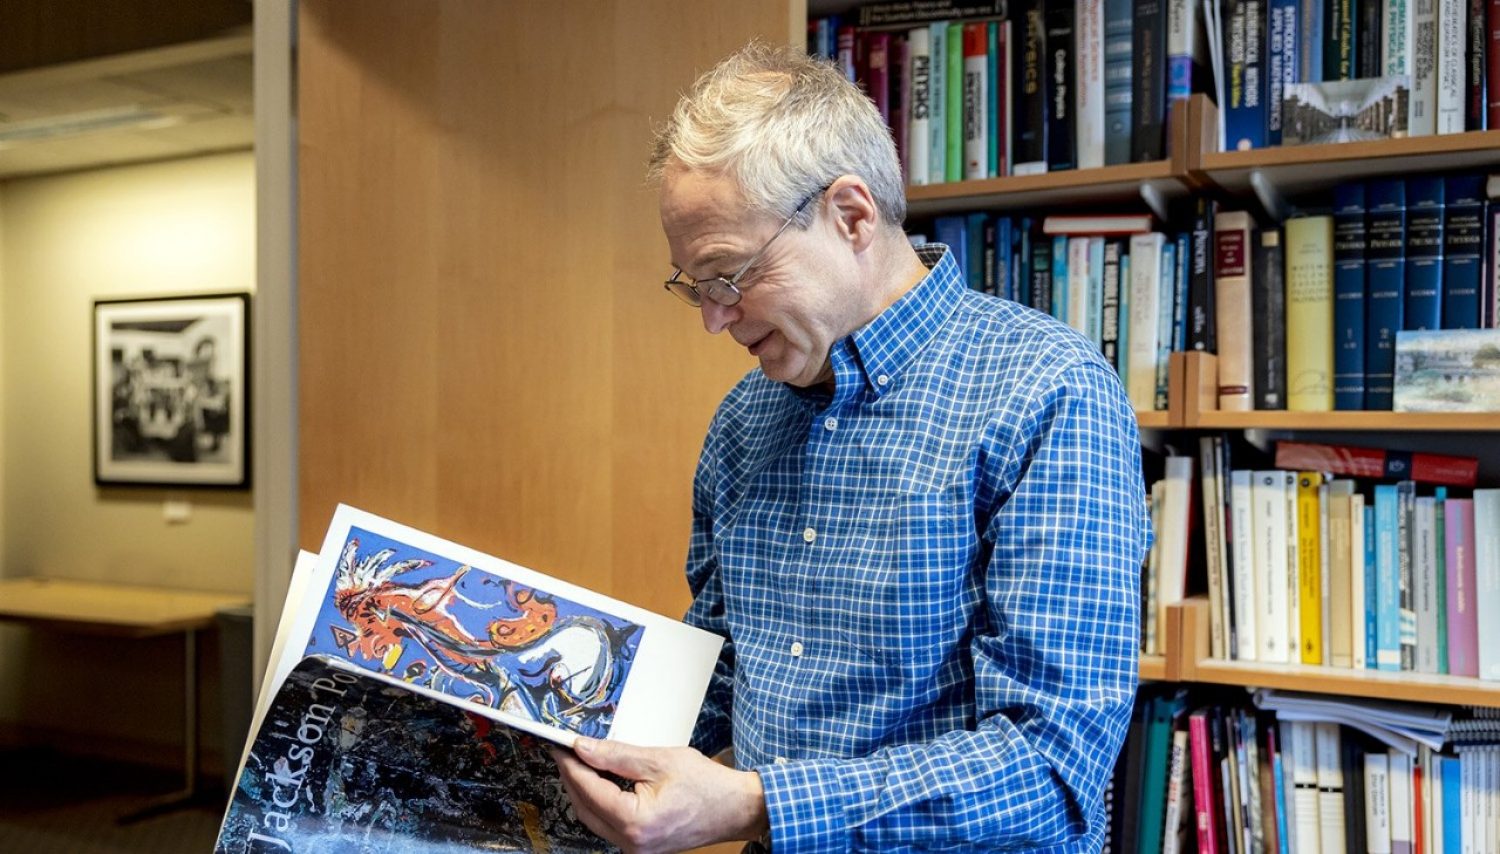 Andrzej Herczynski holding a booklet